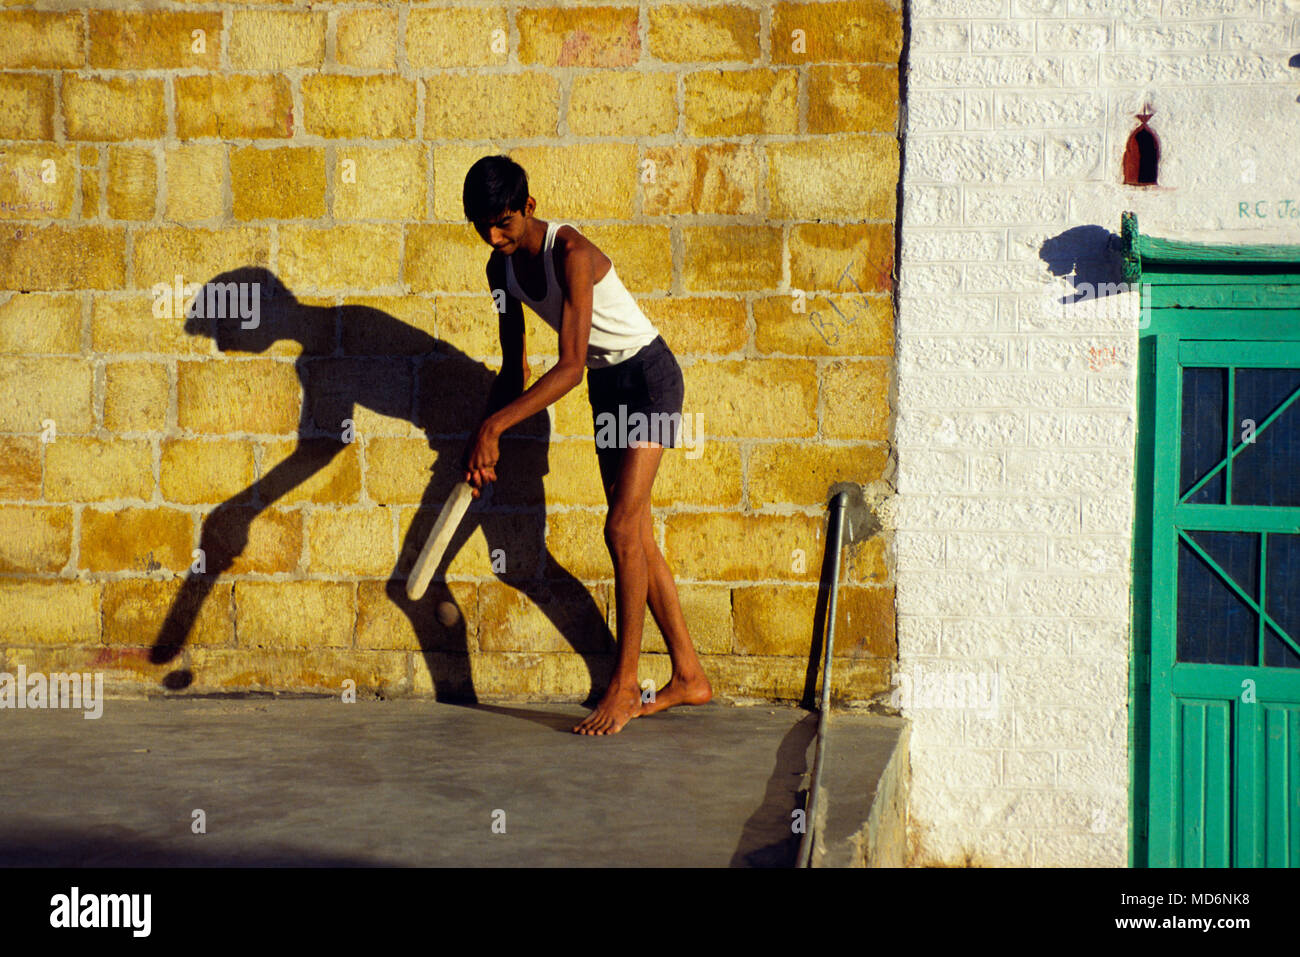 Jaisalmer, Indien; Junge spielt Straße Kricket. Mit Abstand der populärste Sport in Indien, Cricket ist ein multi-million Dollar Industrie. Stockfoto